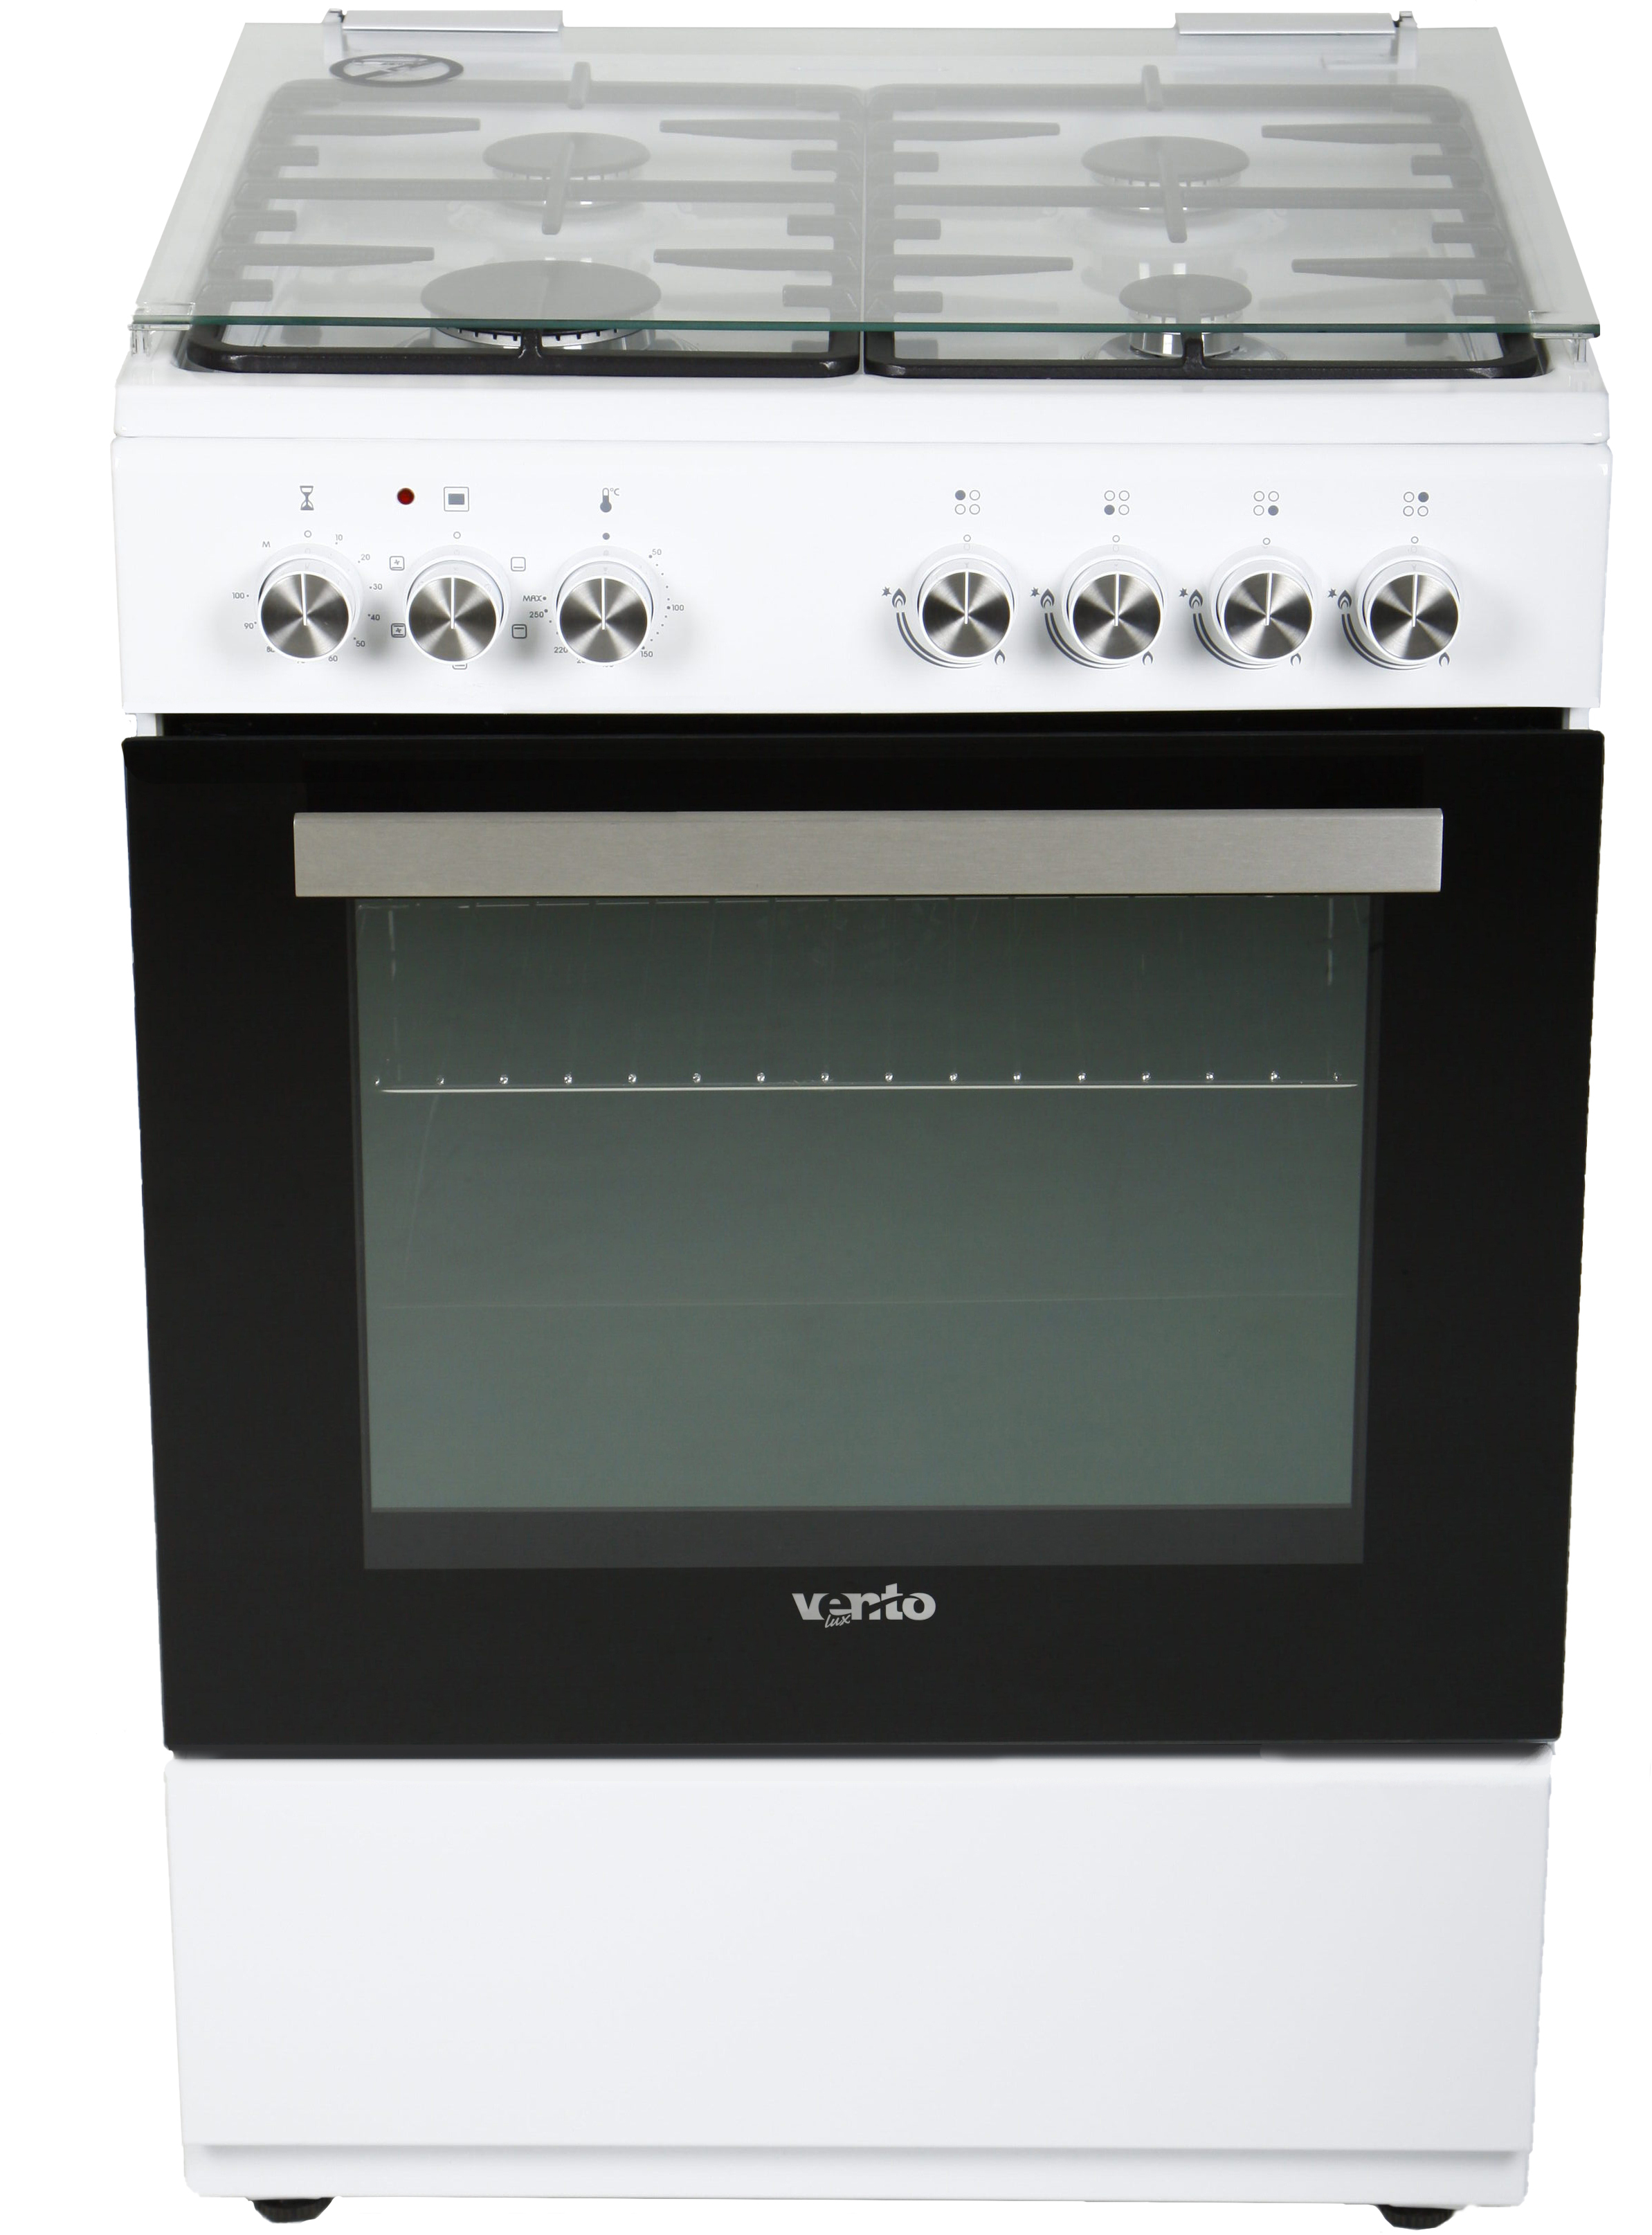 Кухонная плита Ventolux GE 6060 CS 6MT (WH) отзывы - изображения 5